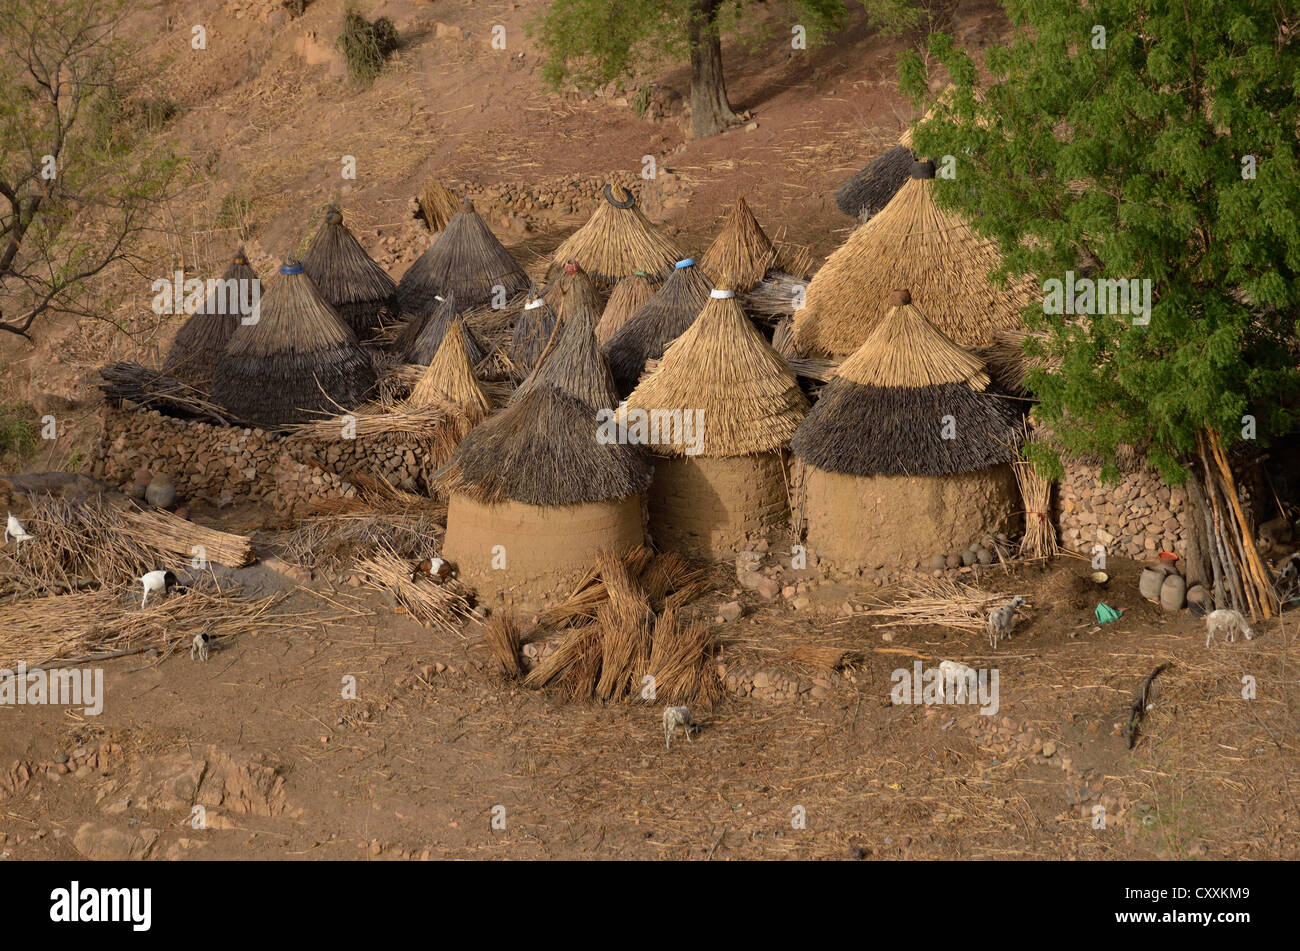 Dorf mit in der Regel strohgedeckten Rundhütten in den Mandara Bergen, Kamerun, Zentralafrika, Afrika Stockfoto